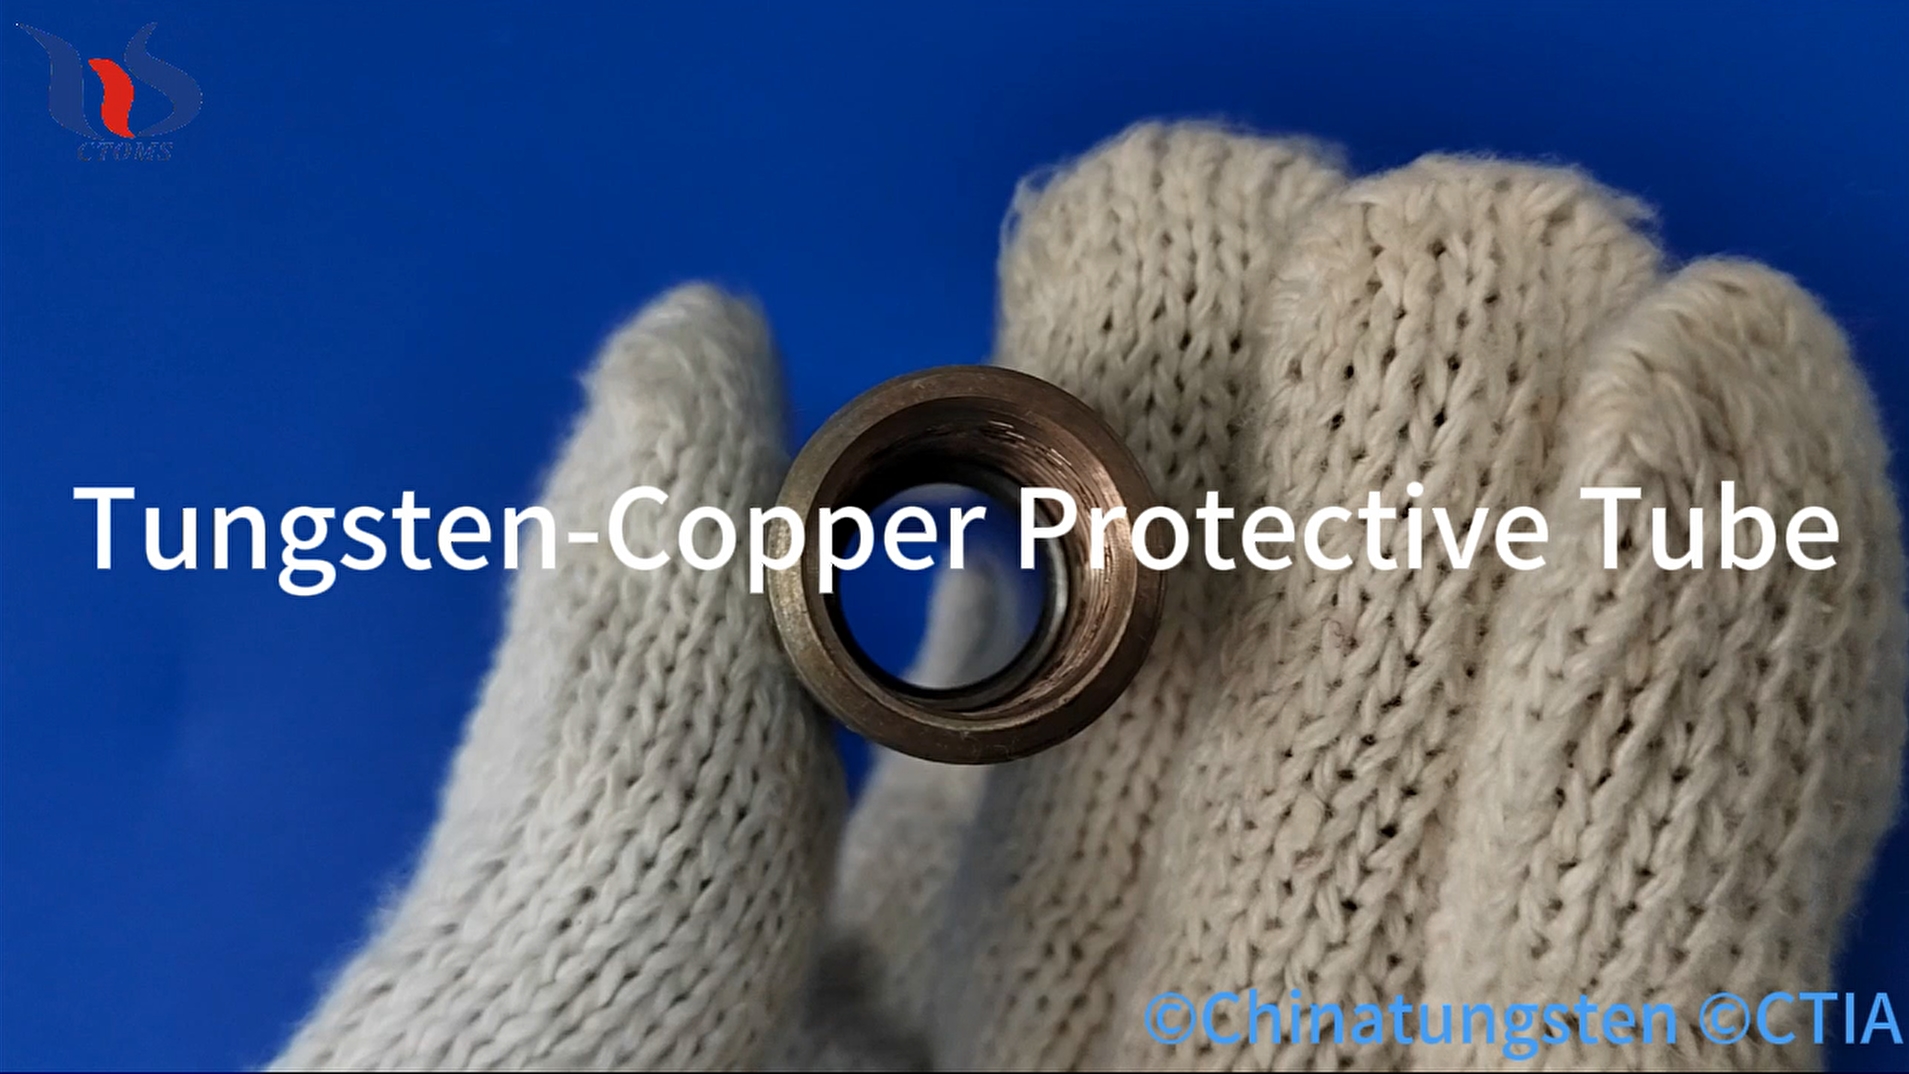 tungsten-copper protective tube image 